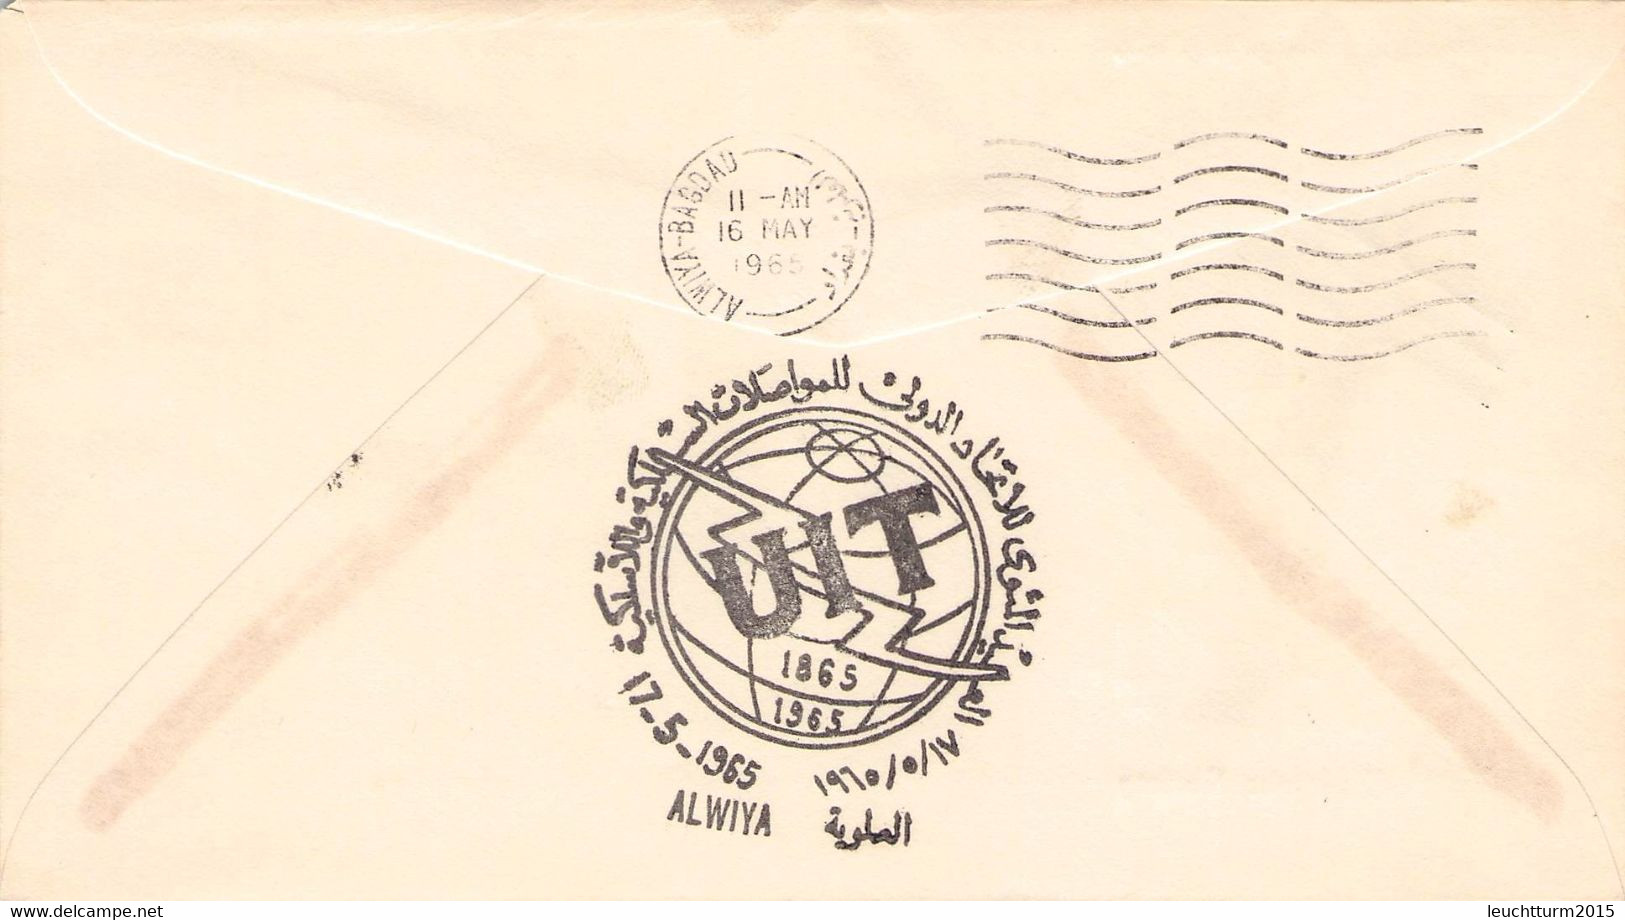 IRAQ - FDC 1965 INTERN. TELECOMMUNICATION Mi #413-414 / ZC41 - Iraq